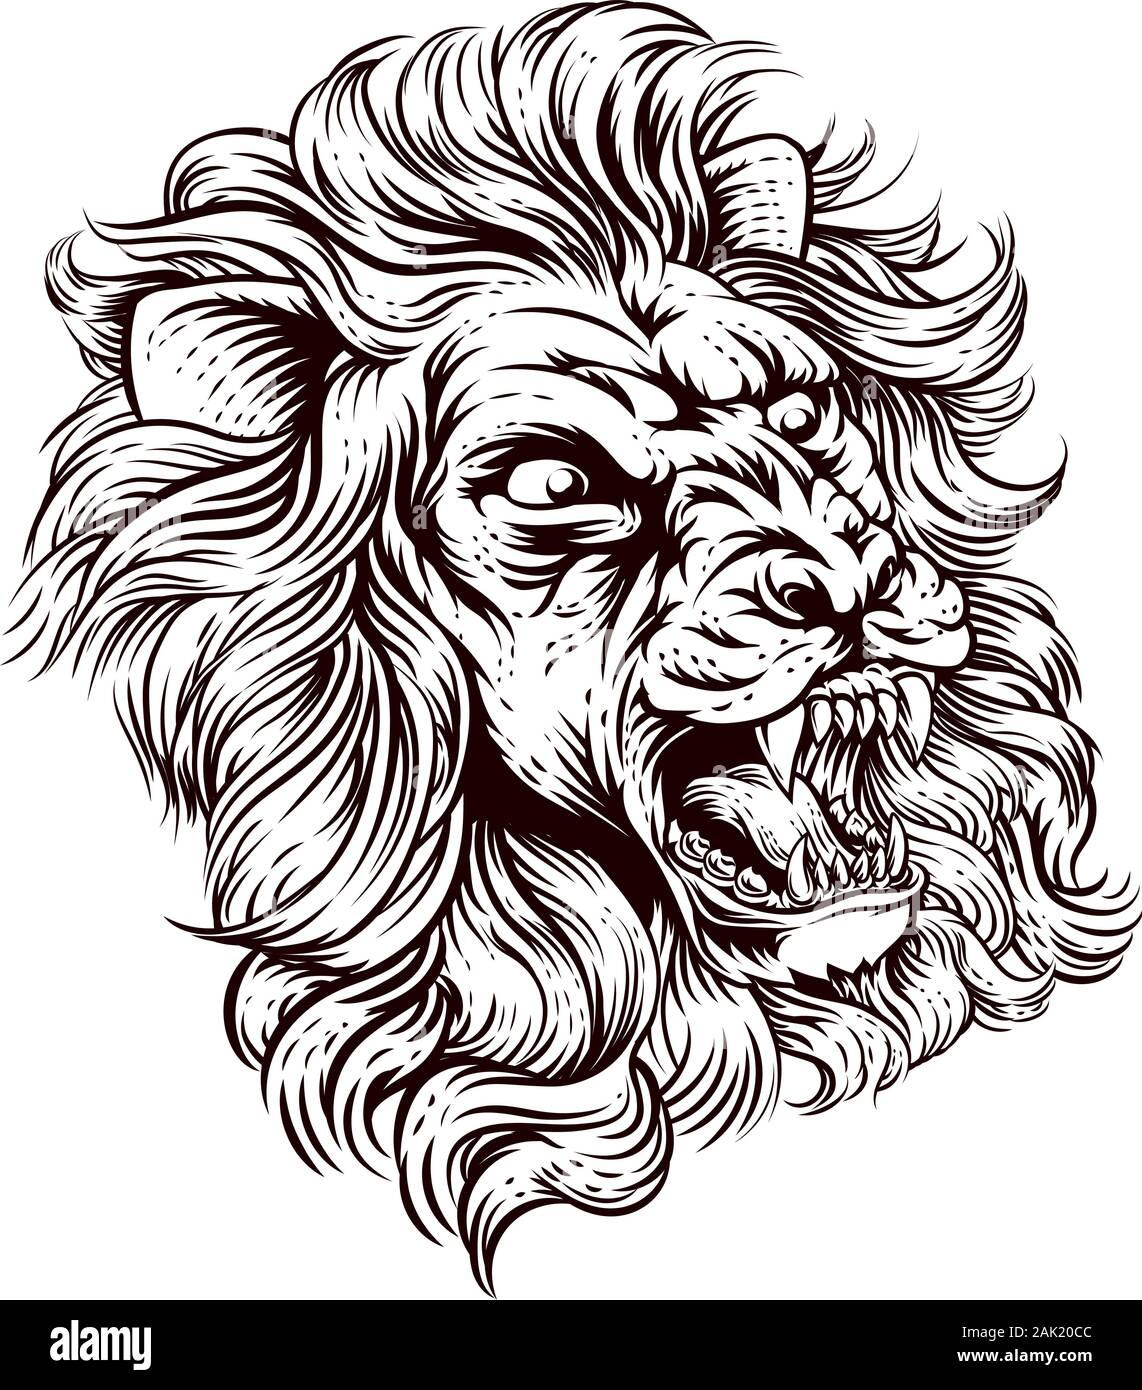 Ballpoint lion sketch : r/sketches